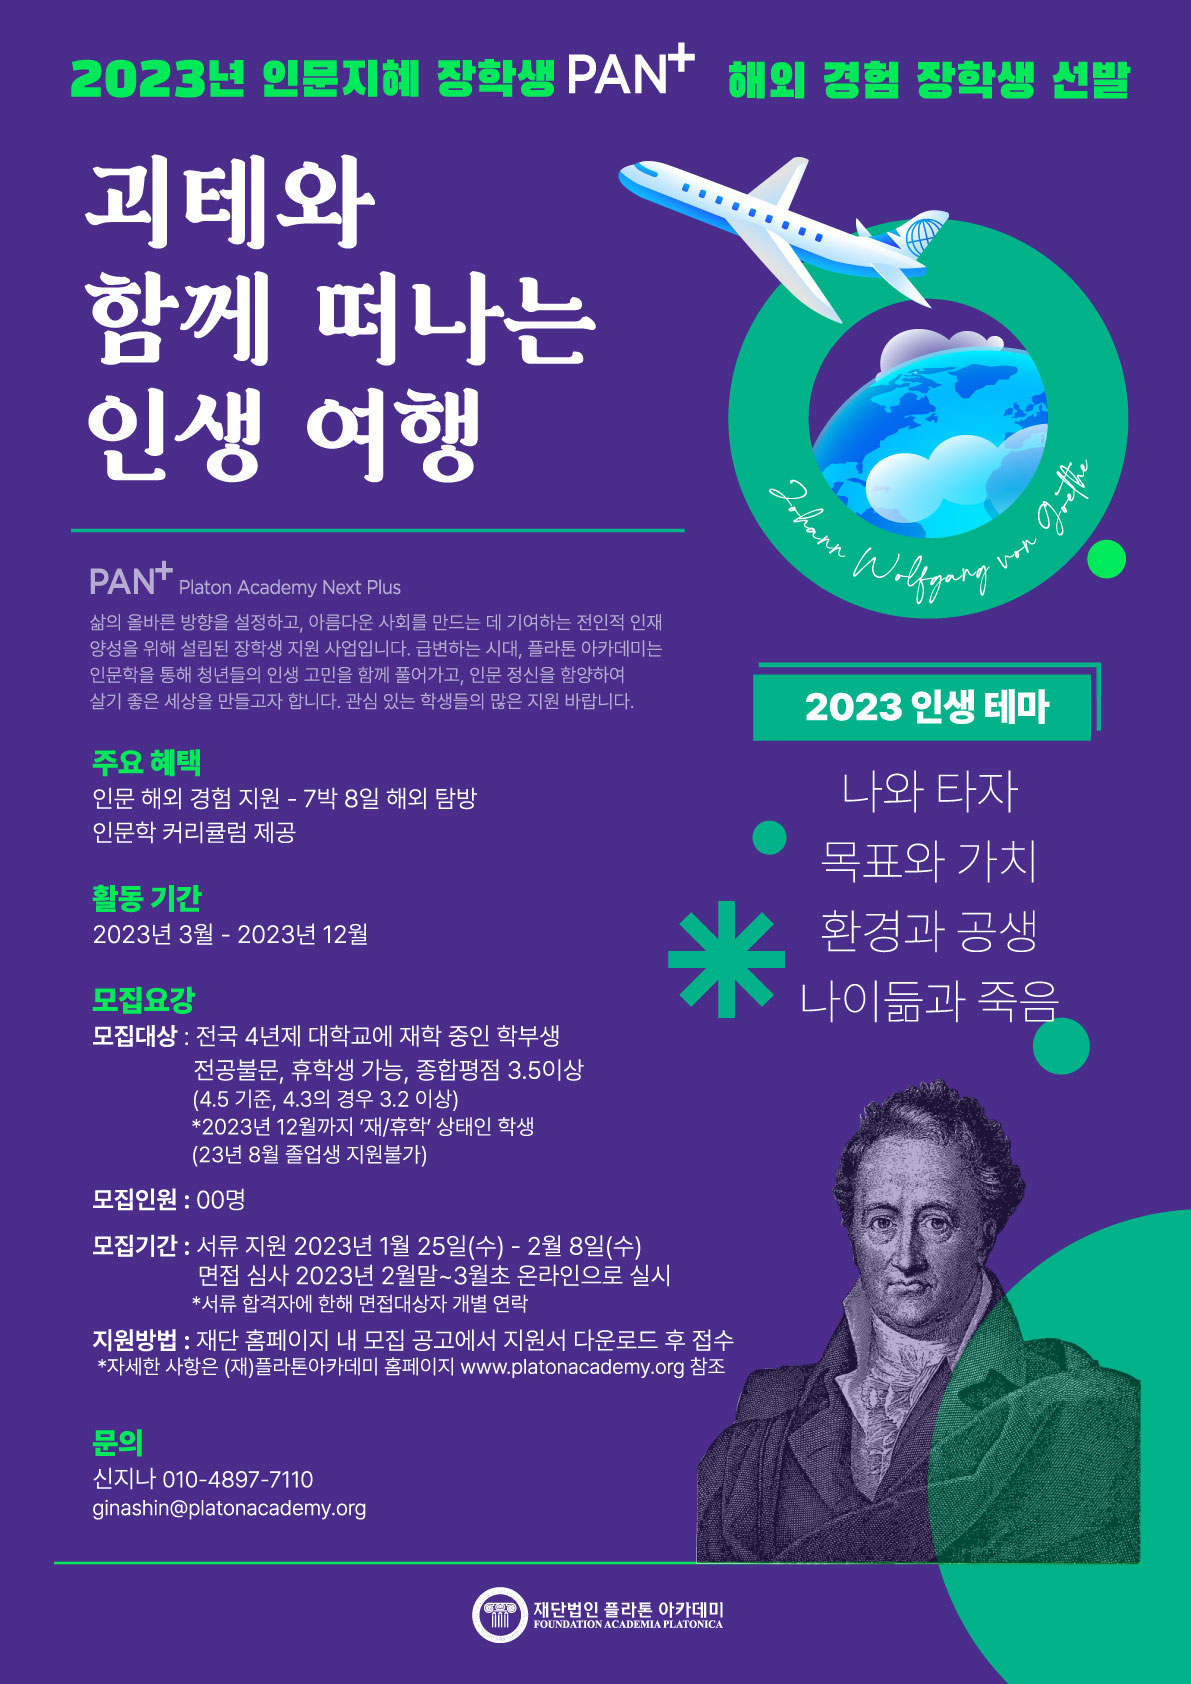 (재)플라톤아카데미 2023_인문지혜장학생 판플러스(PAN+) 포스터